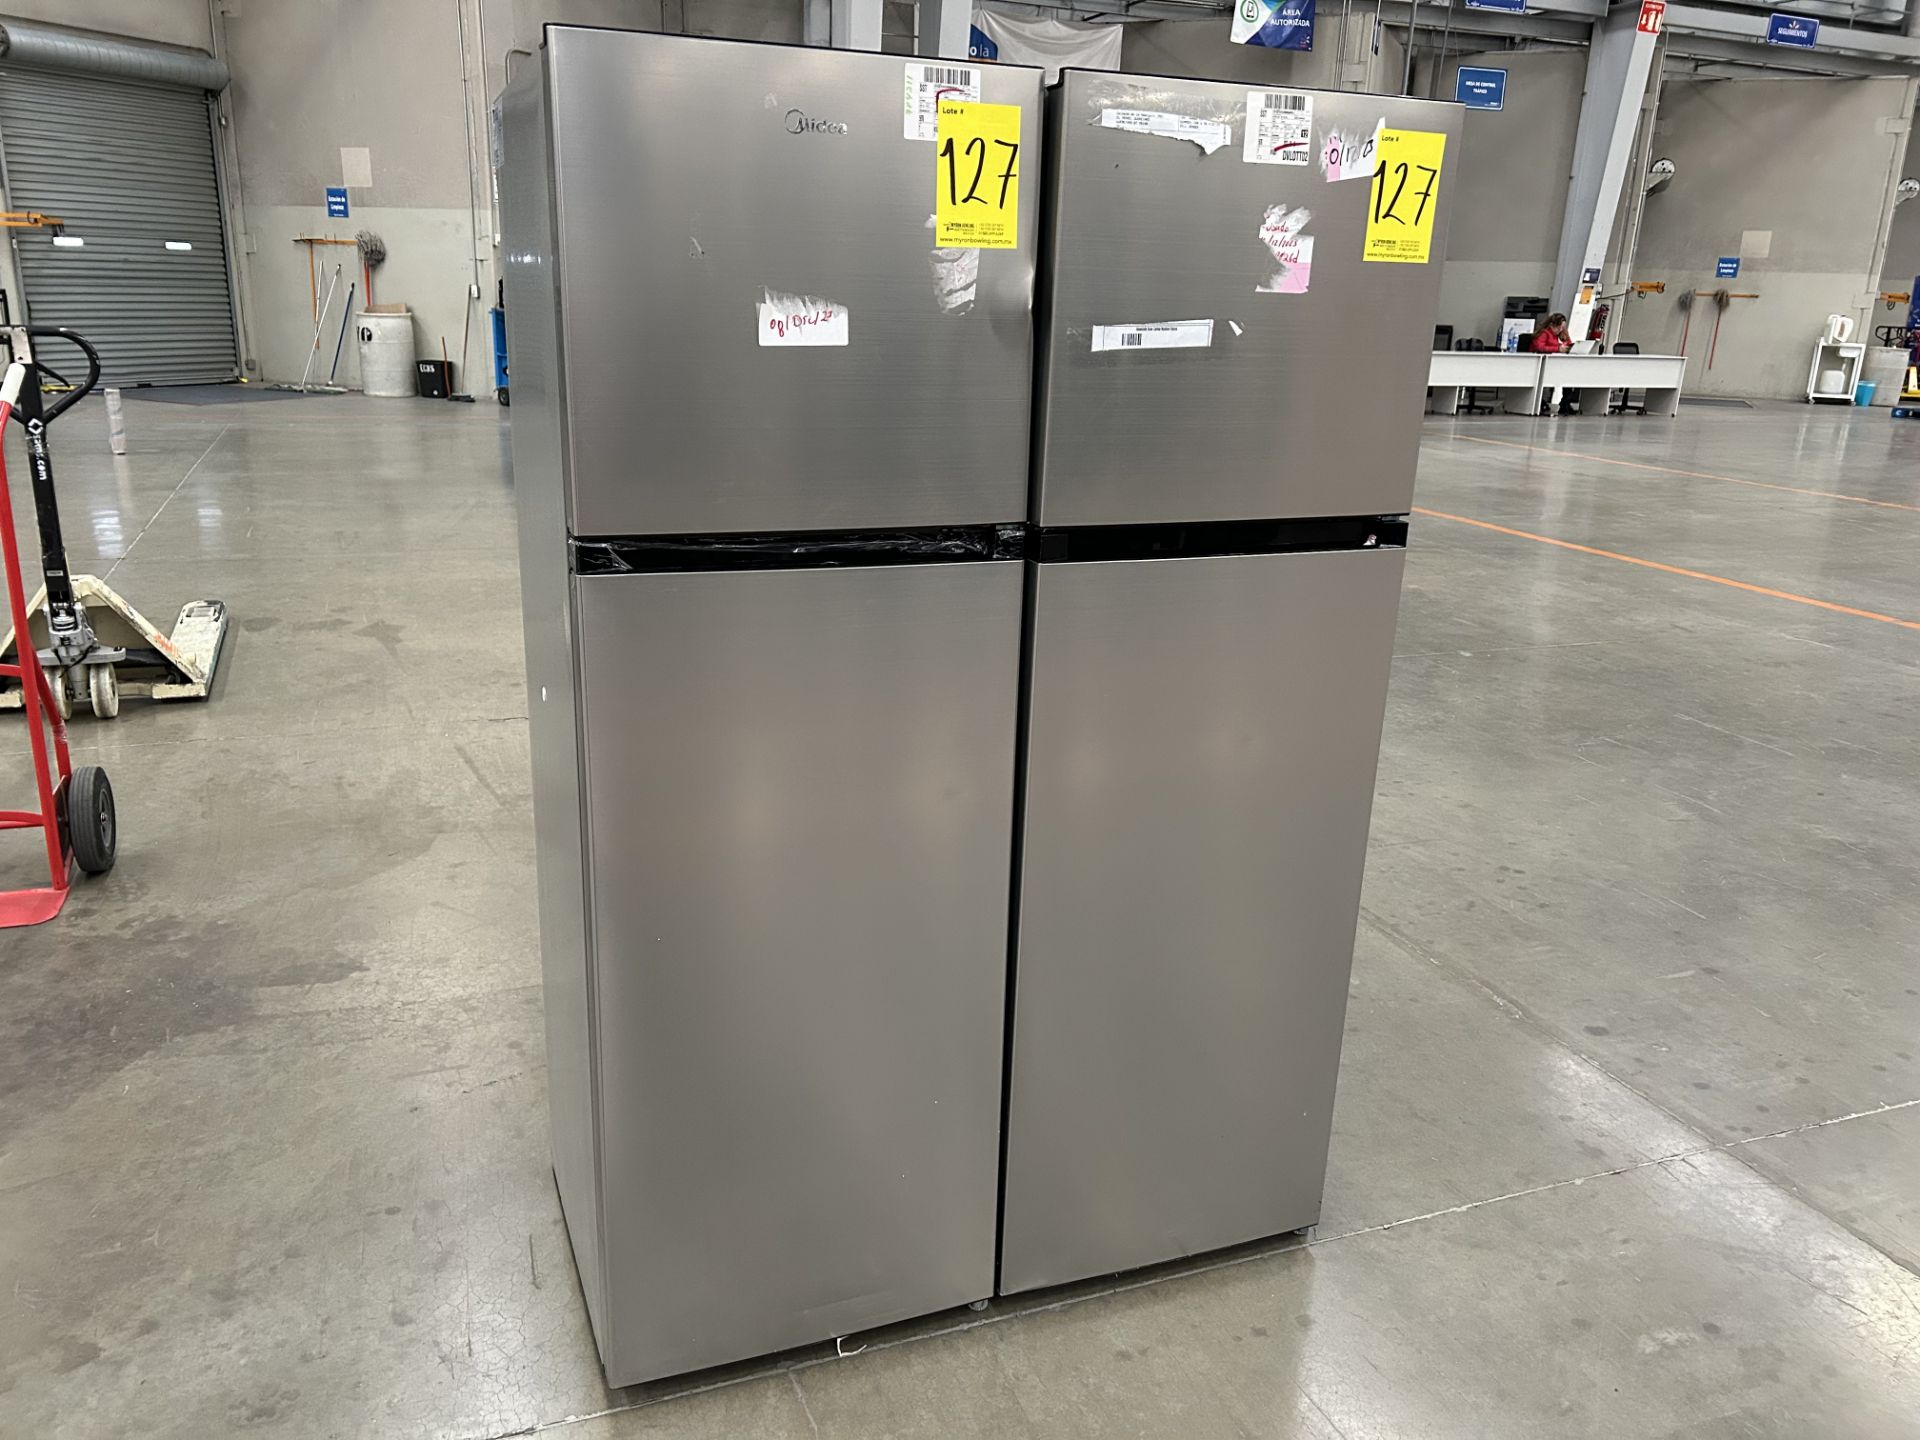 Lote de 2 refrigeradores contiene: 1 refrigerador Marca MIDEA, Modelo MDRT280WINDX, Serie 11872, Co - Image 2 of 6